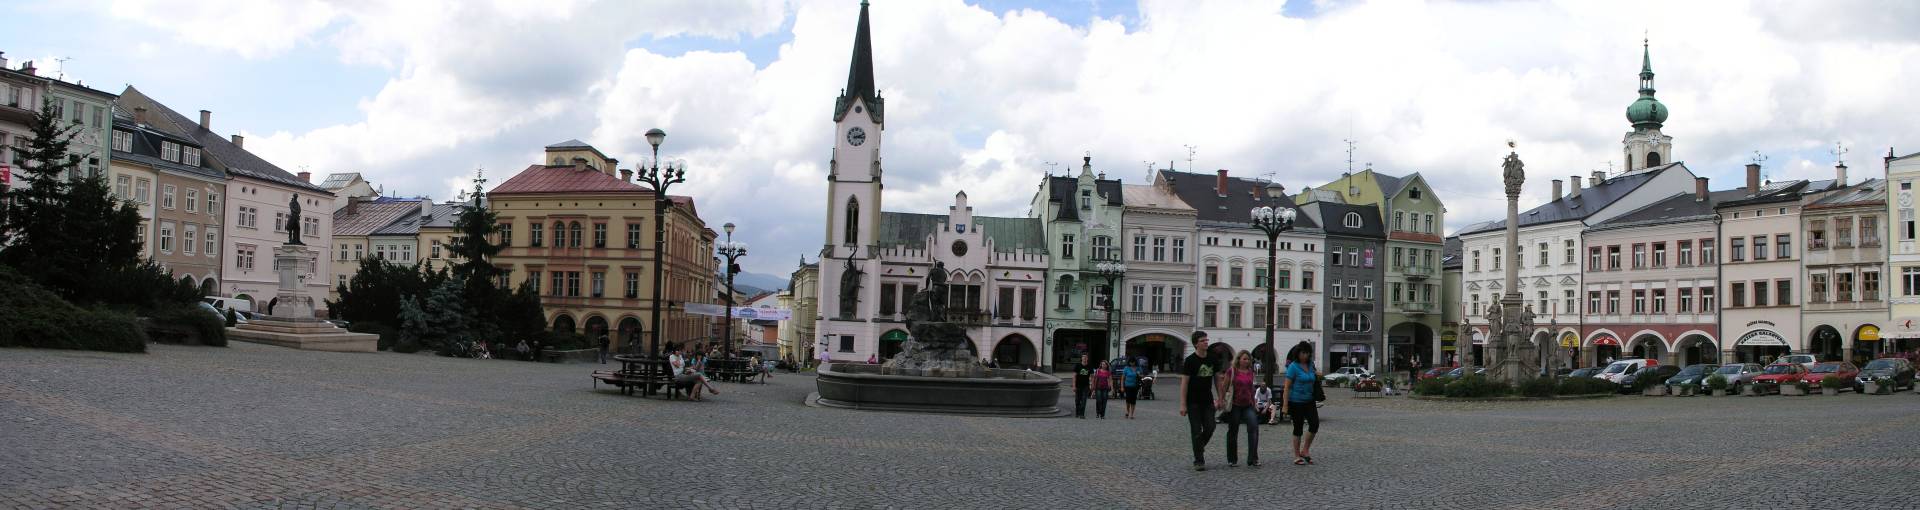 Trautenau, Panorama am Marktplatz